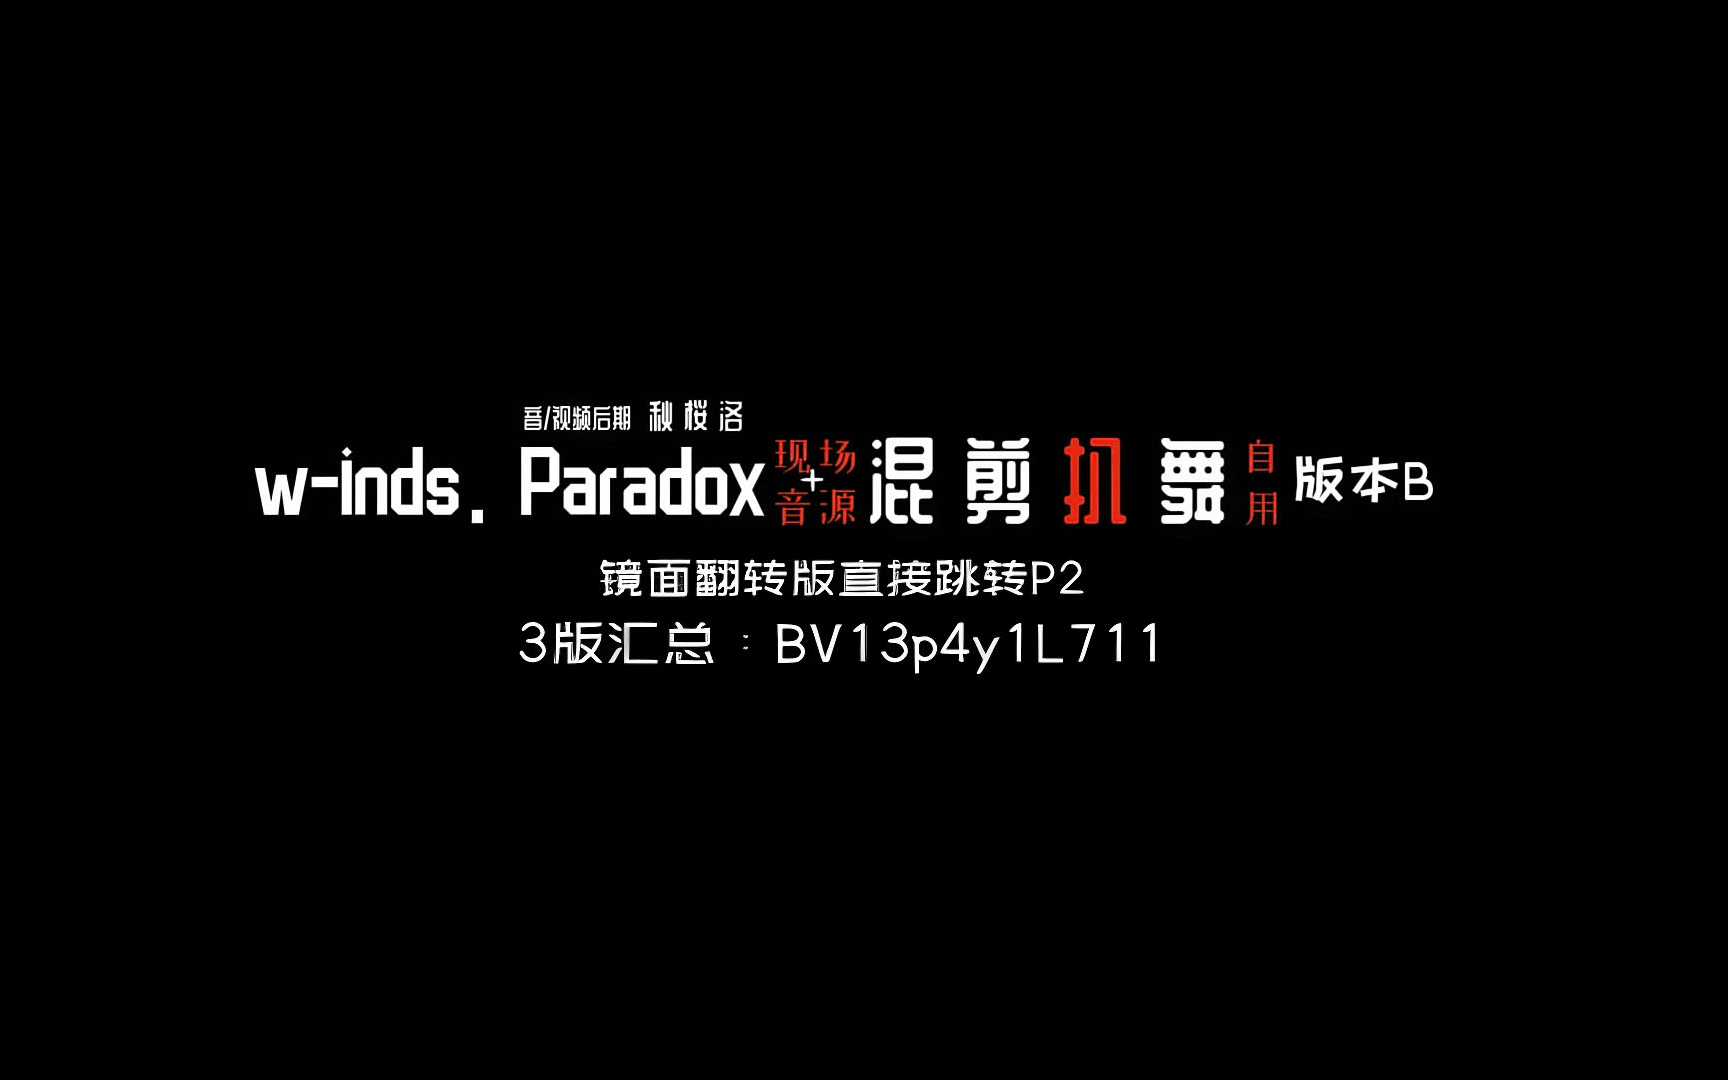 【扒舞/翻跳必备】w-inds. Paradox live 混剪/B版